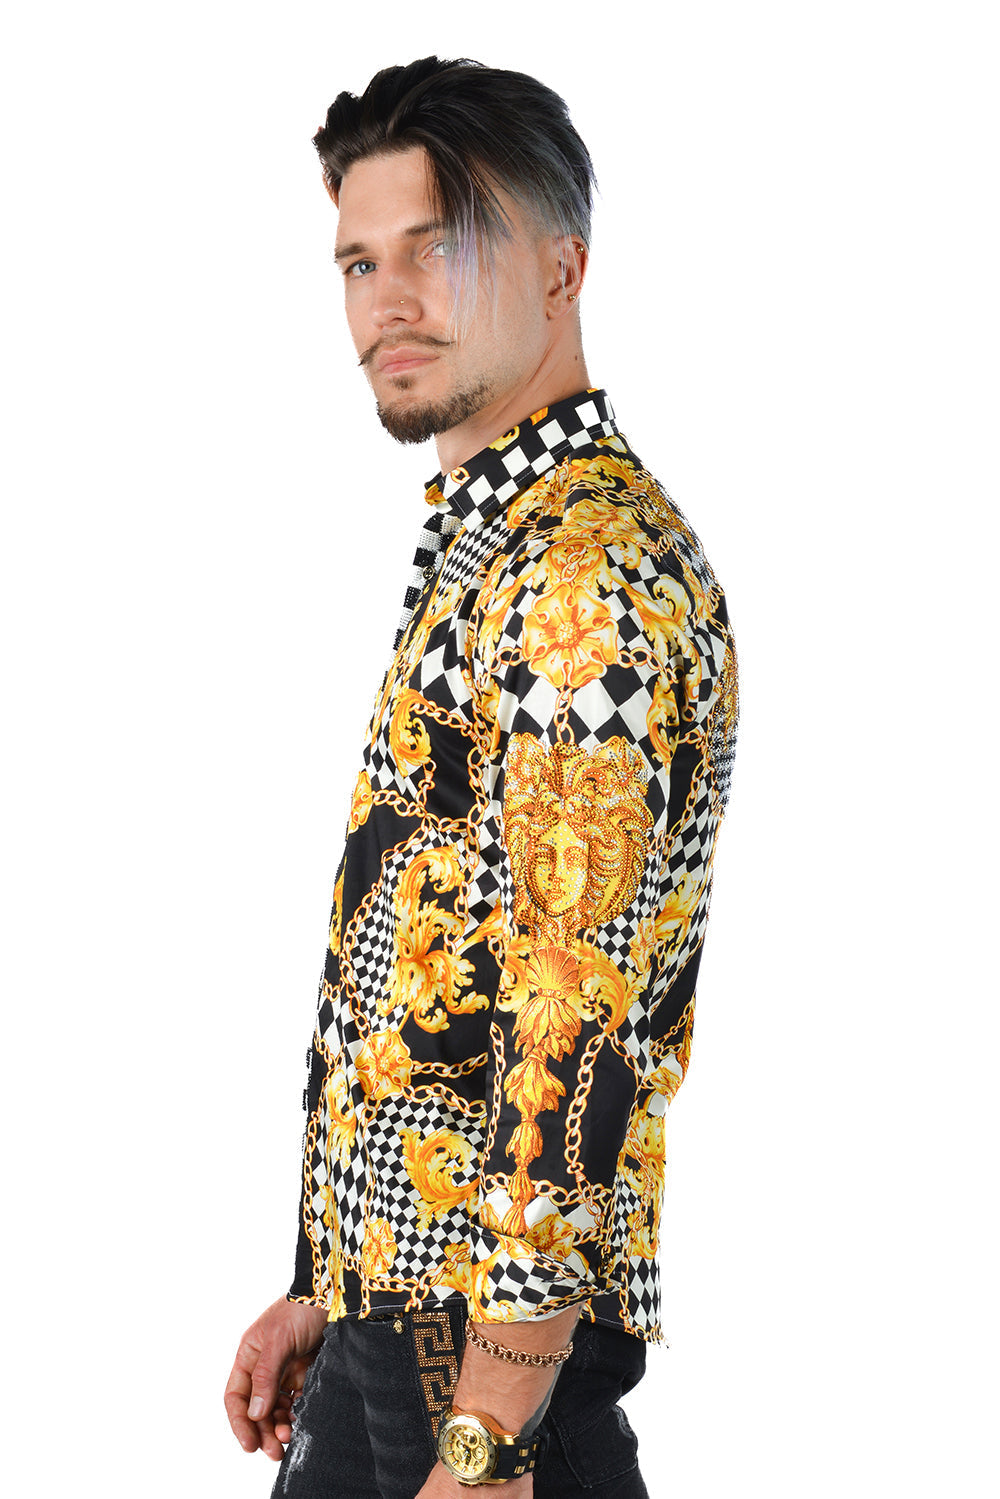 BARABAS Men's Medusa Floral Checkered Baroque Button Down Shirt SPR02 Black